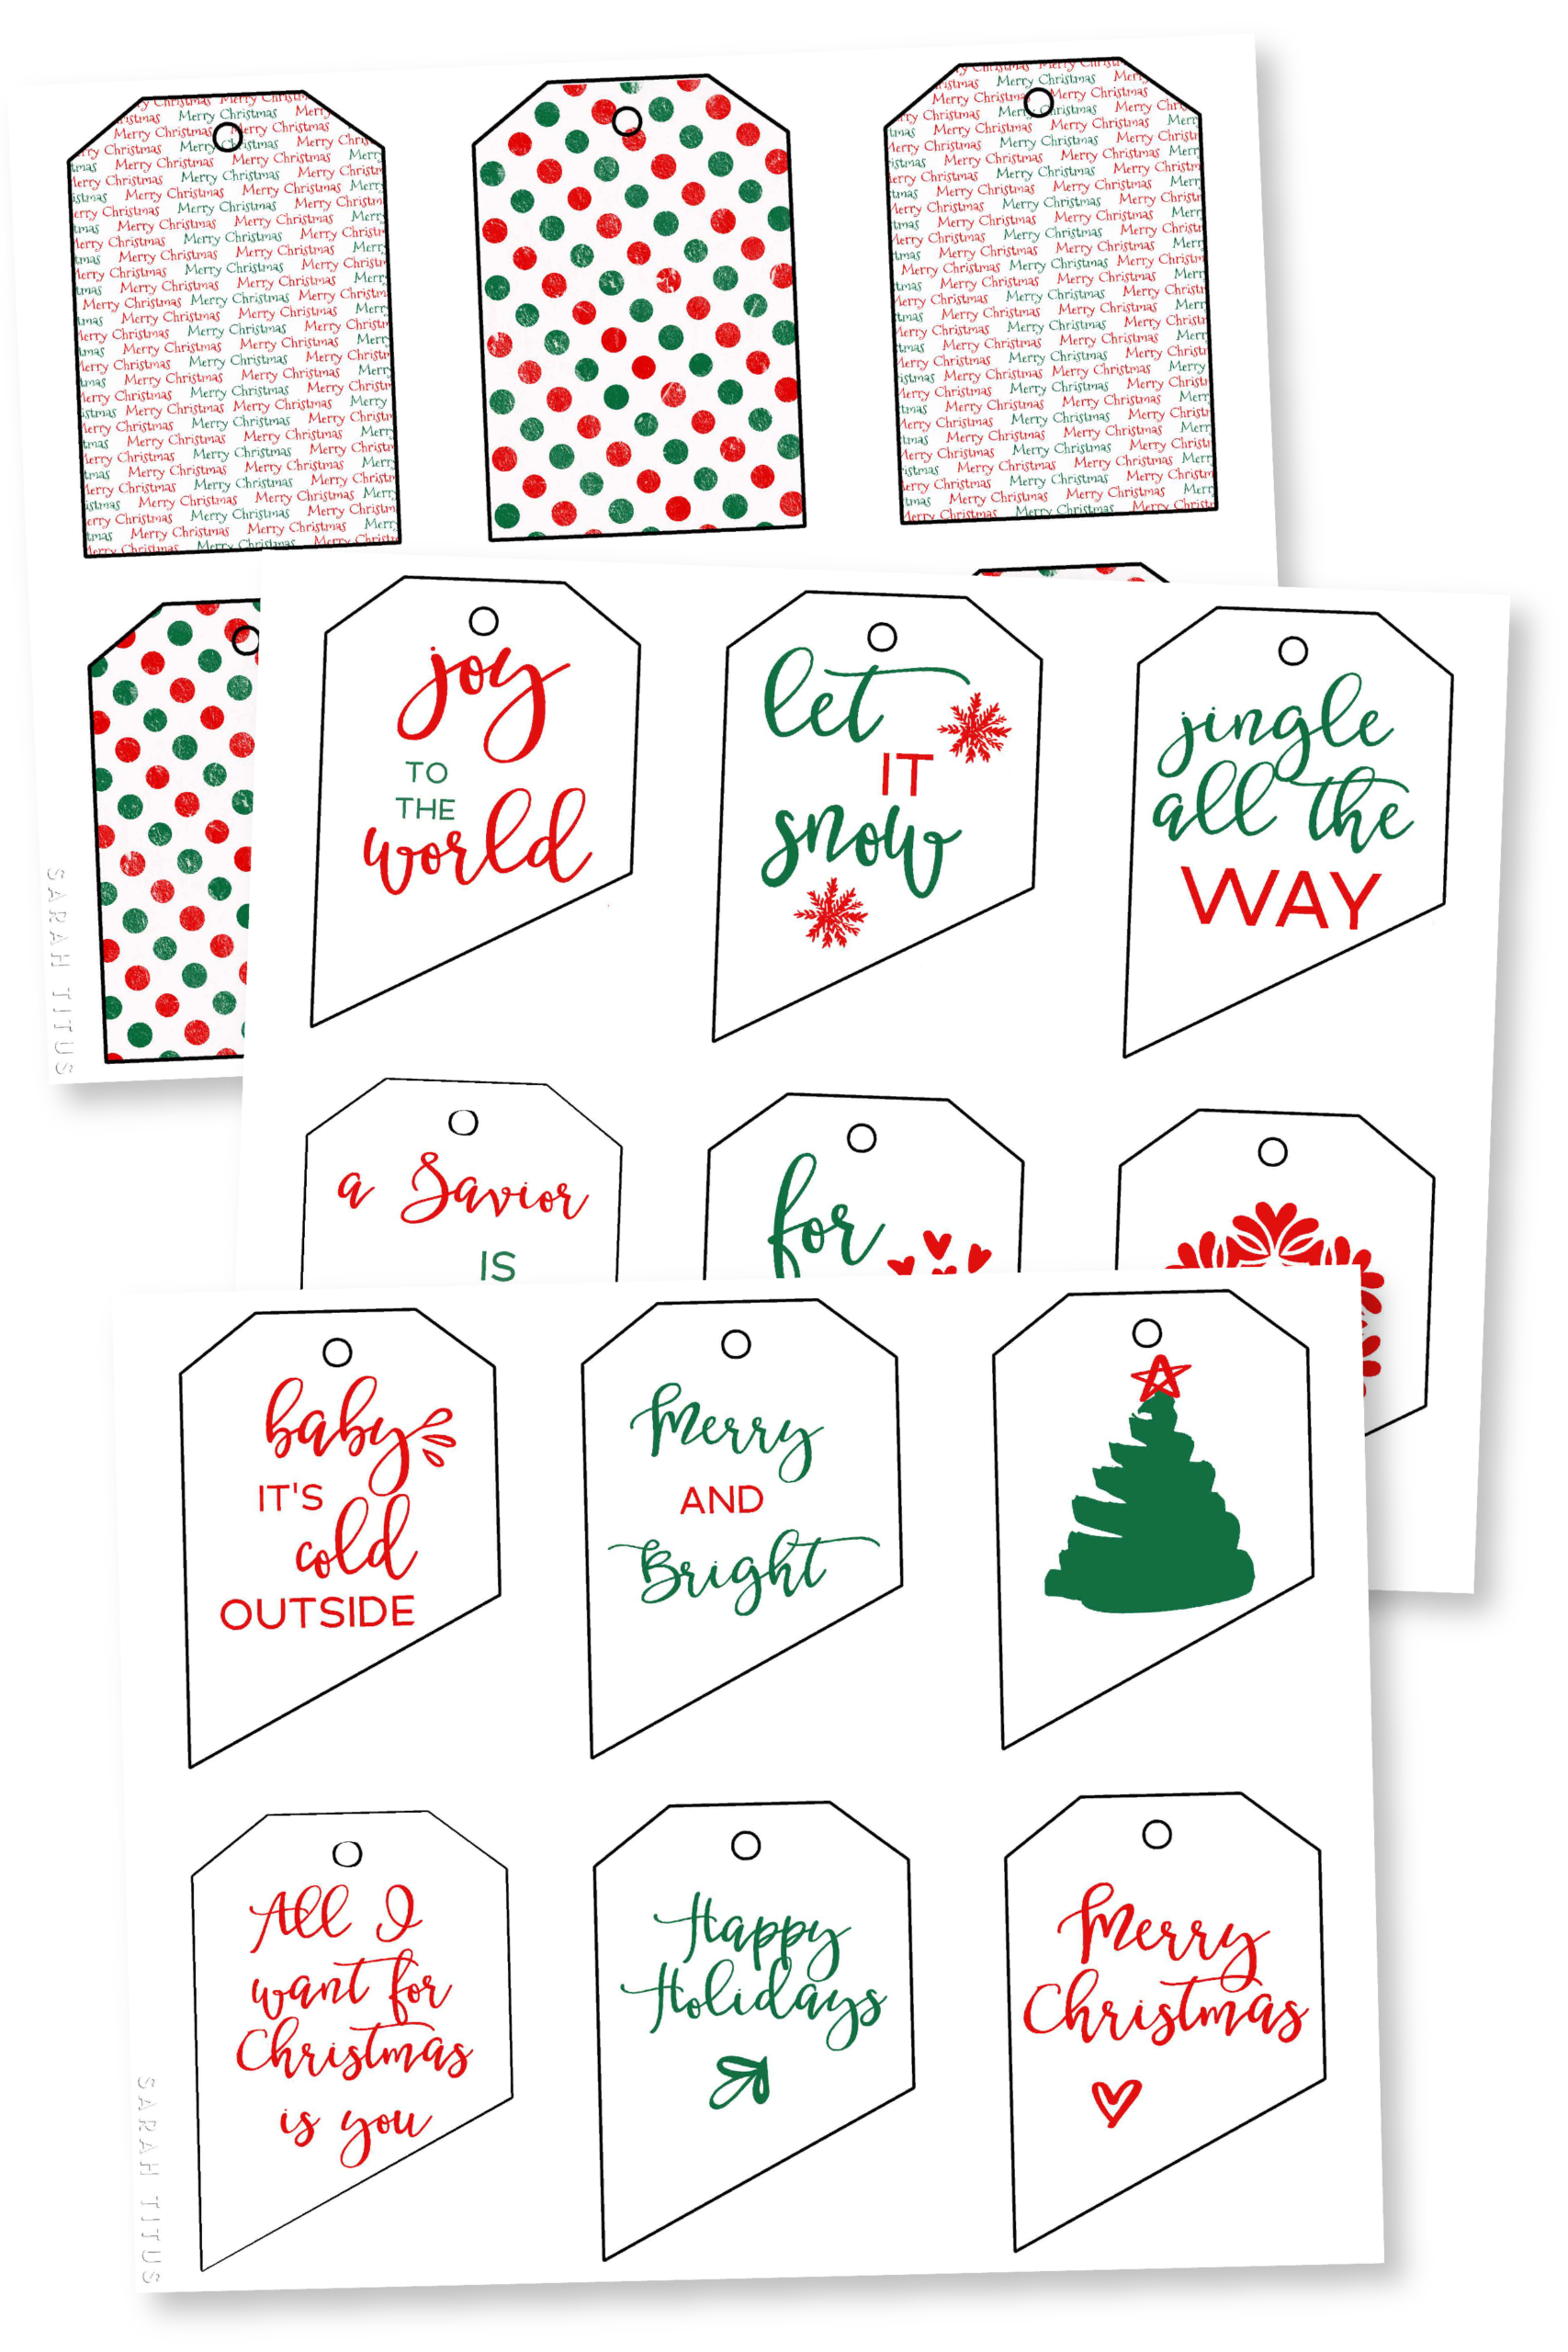 Free Printable Christmas Gift Tags - Sarah Titus